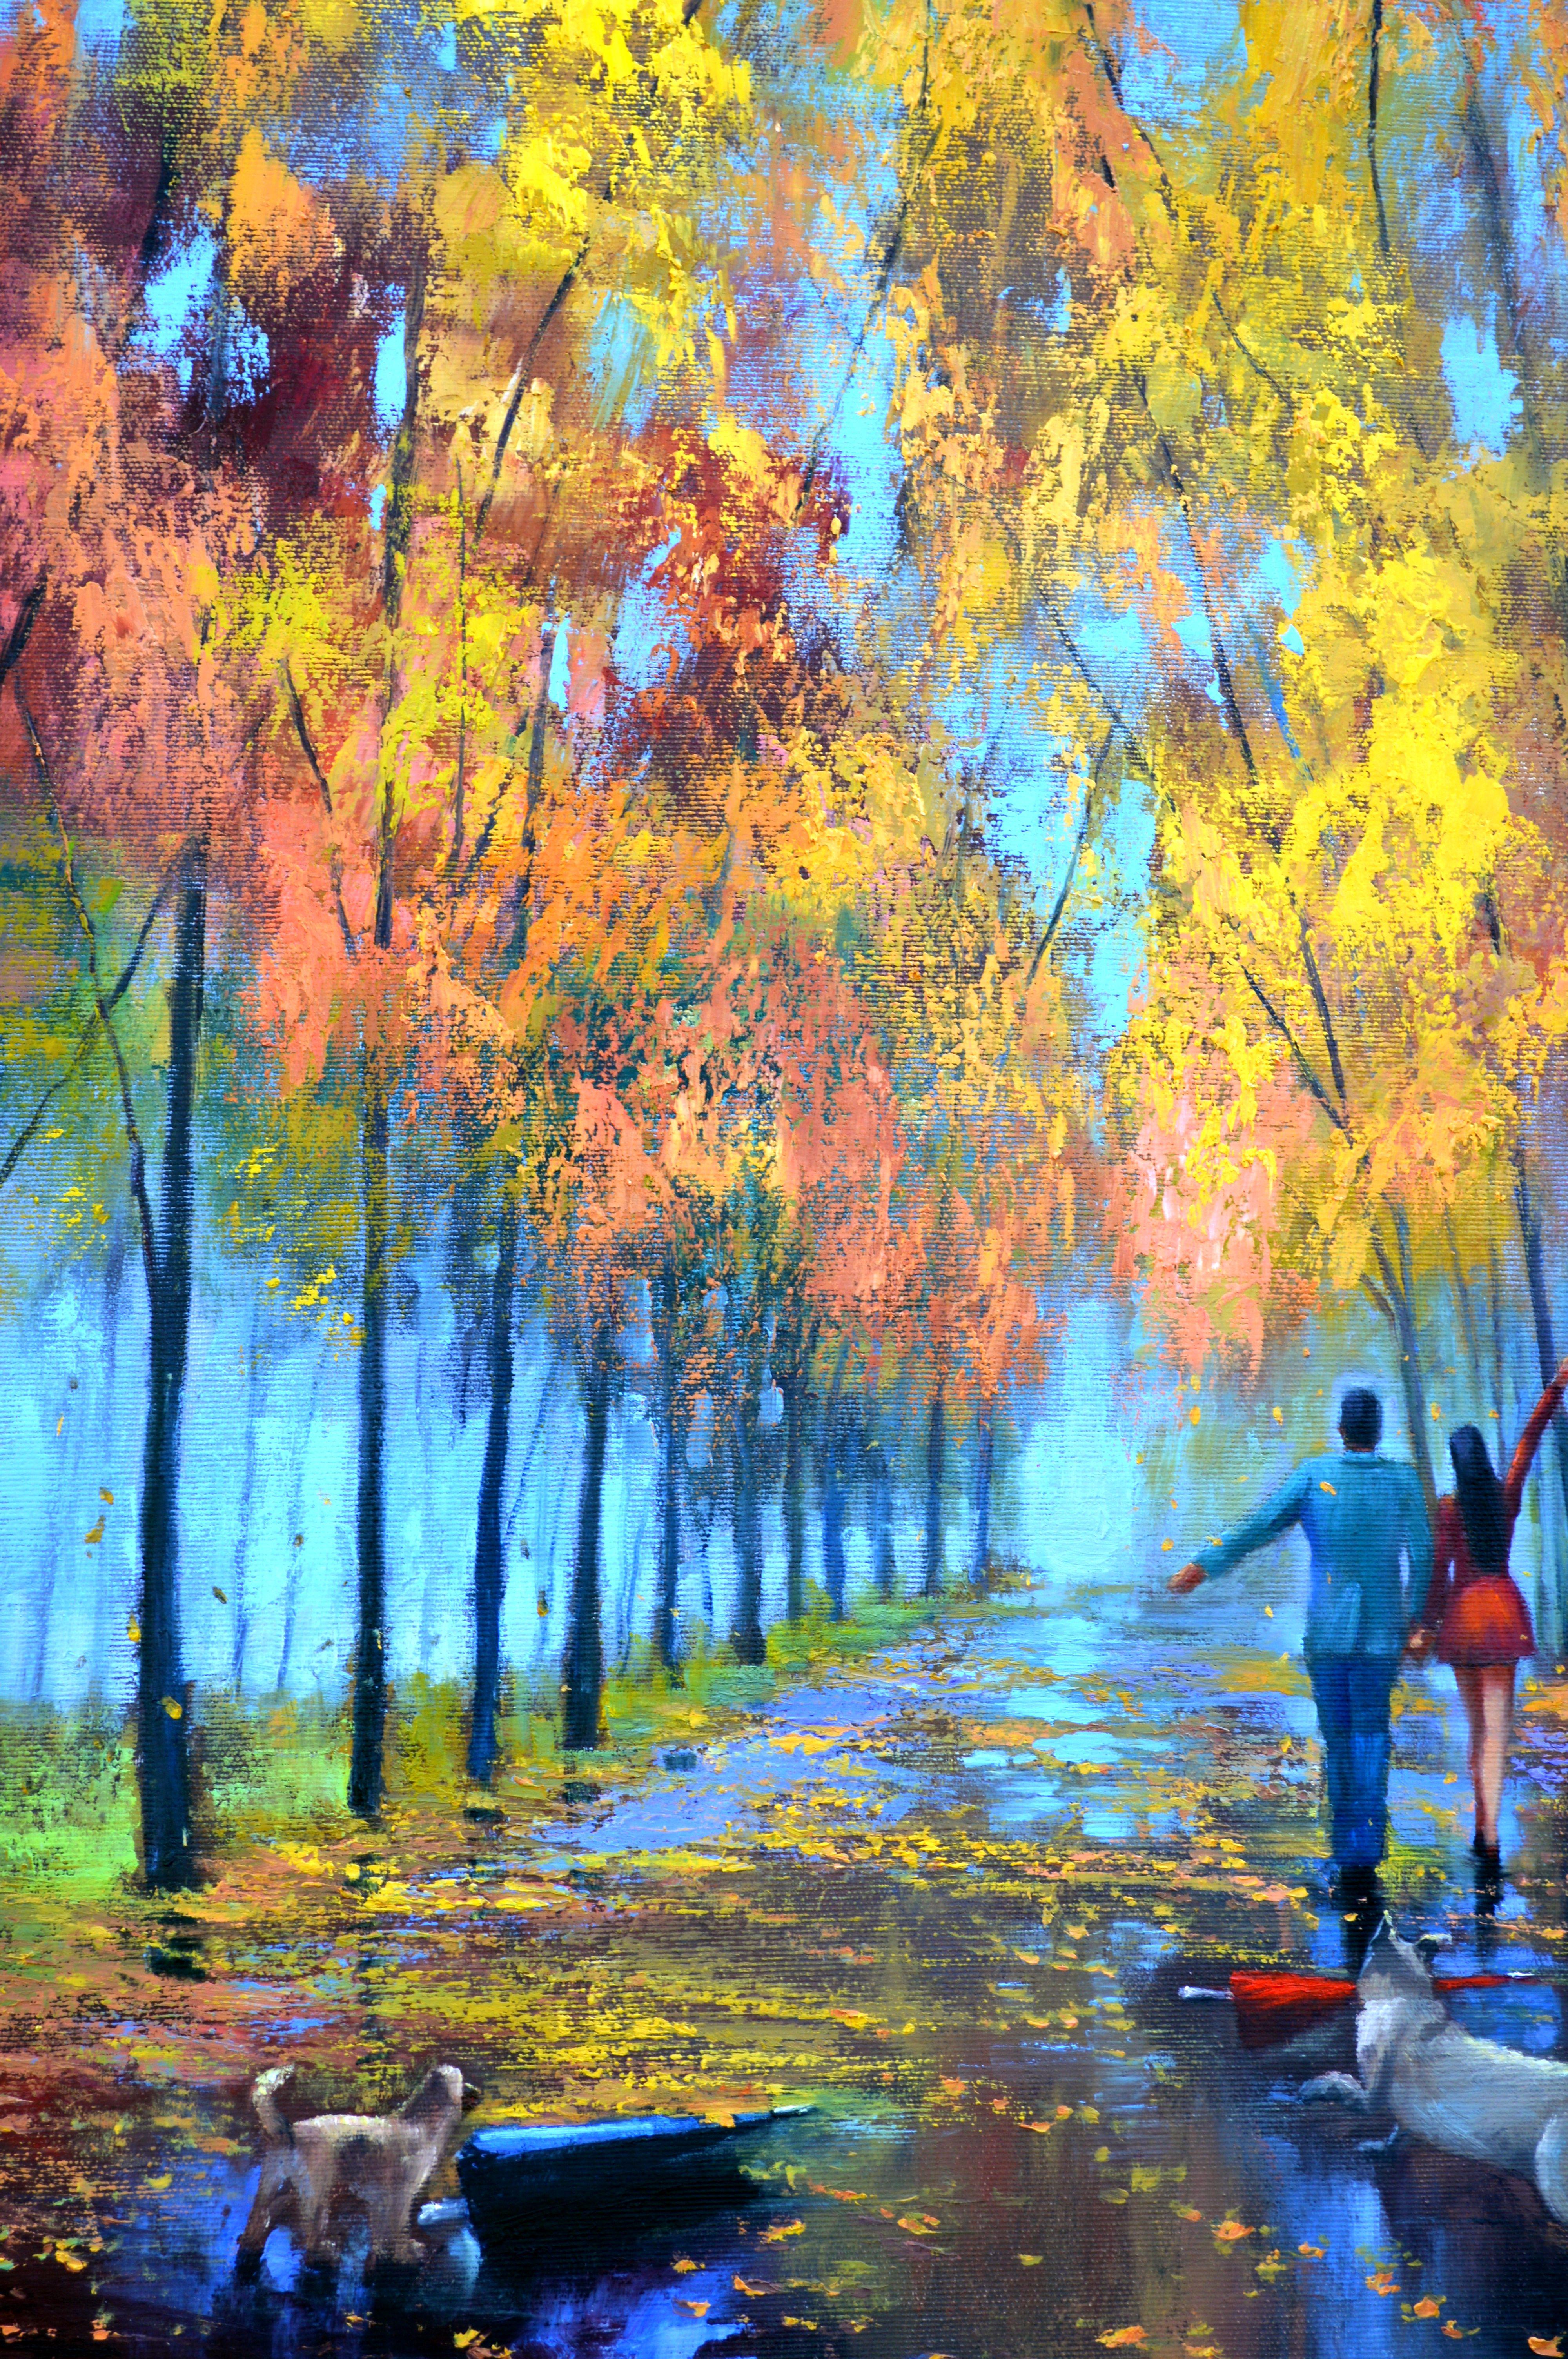 In diesem Ölgemälde habe ich den Expressionismus mit impressionistischen Anklängen verbunden, um den ruhigen Spaziergang eines Paares unter einem leuchtenden herbstlichen Blätterdach festzuhalten. Der Realismus des nassen Weges spiegelt die Reisen